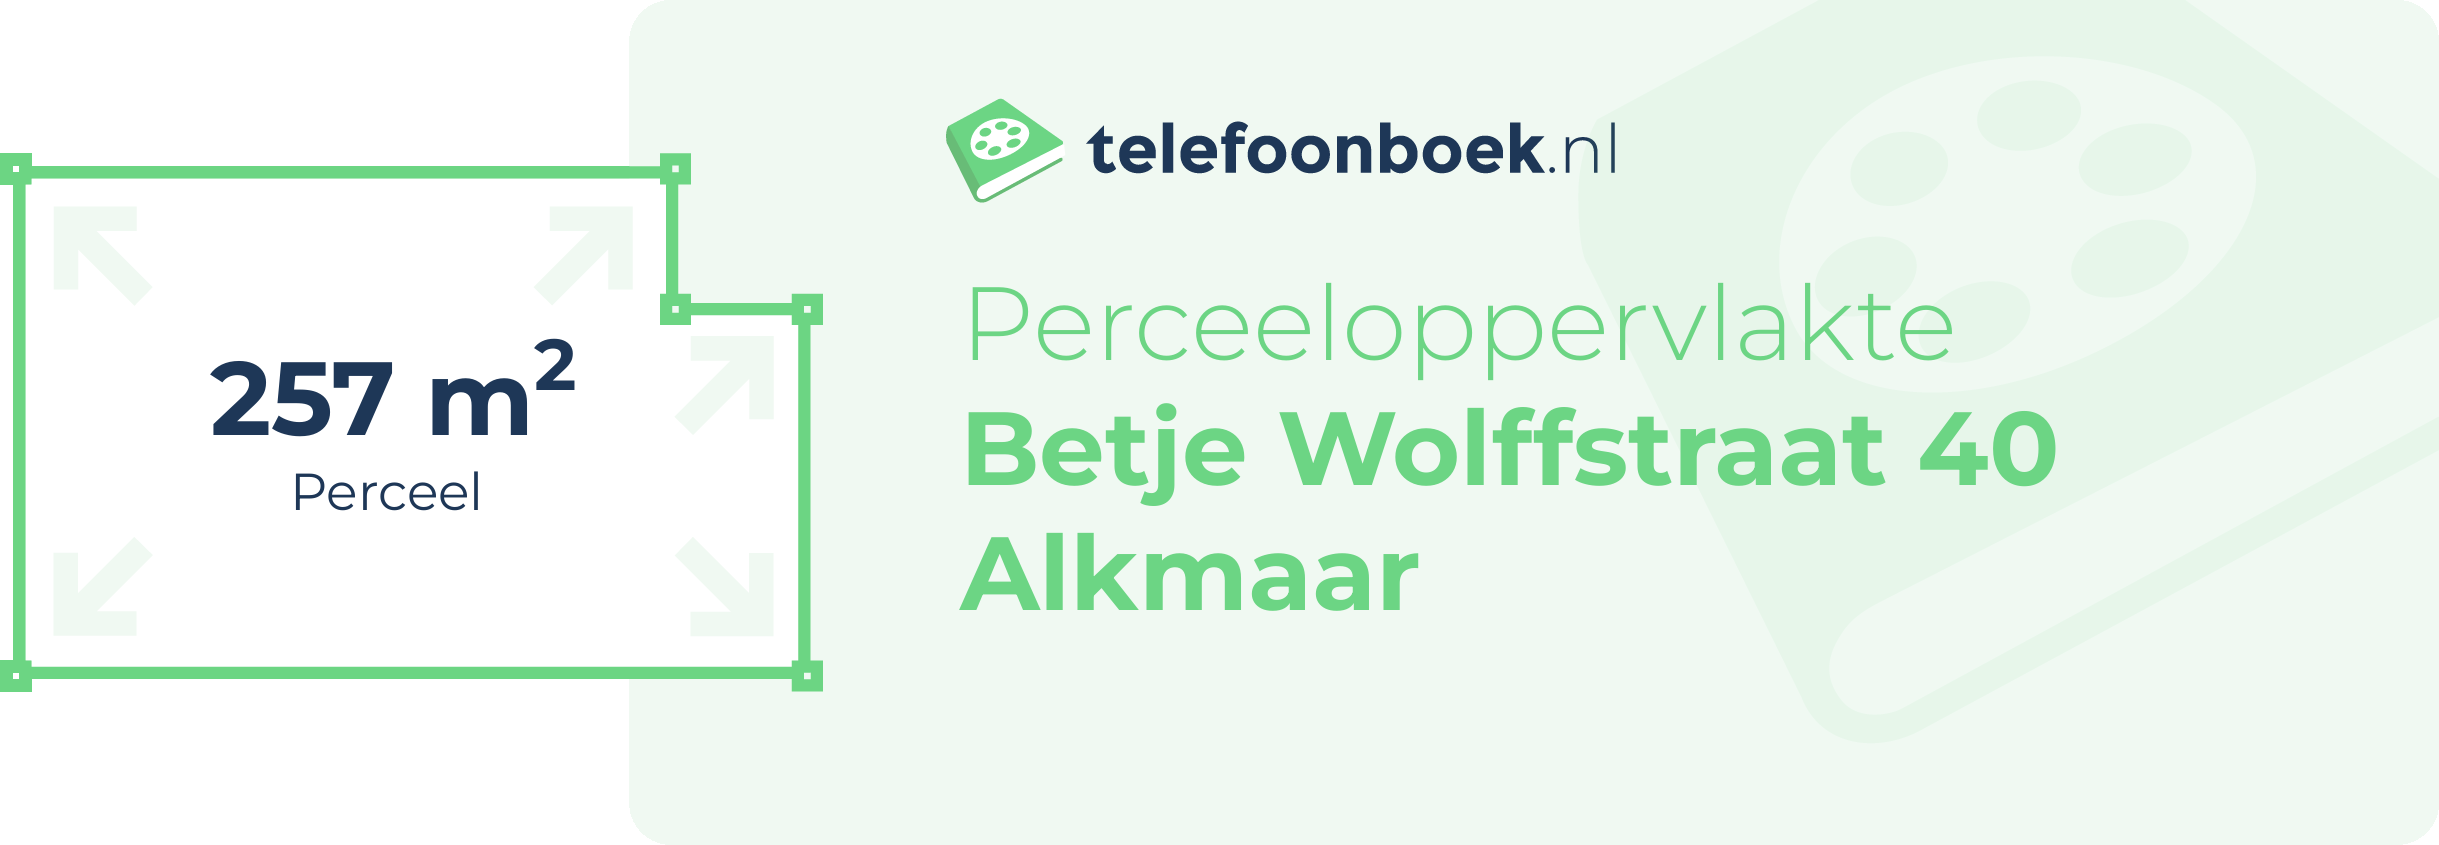 Perceeloppervlakte Betje Wolffstraat 40 Alkmaar